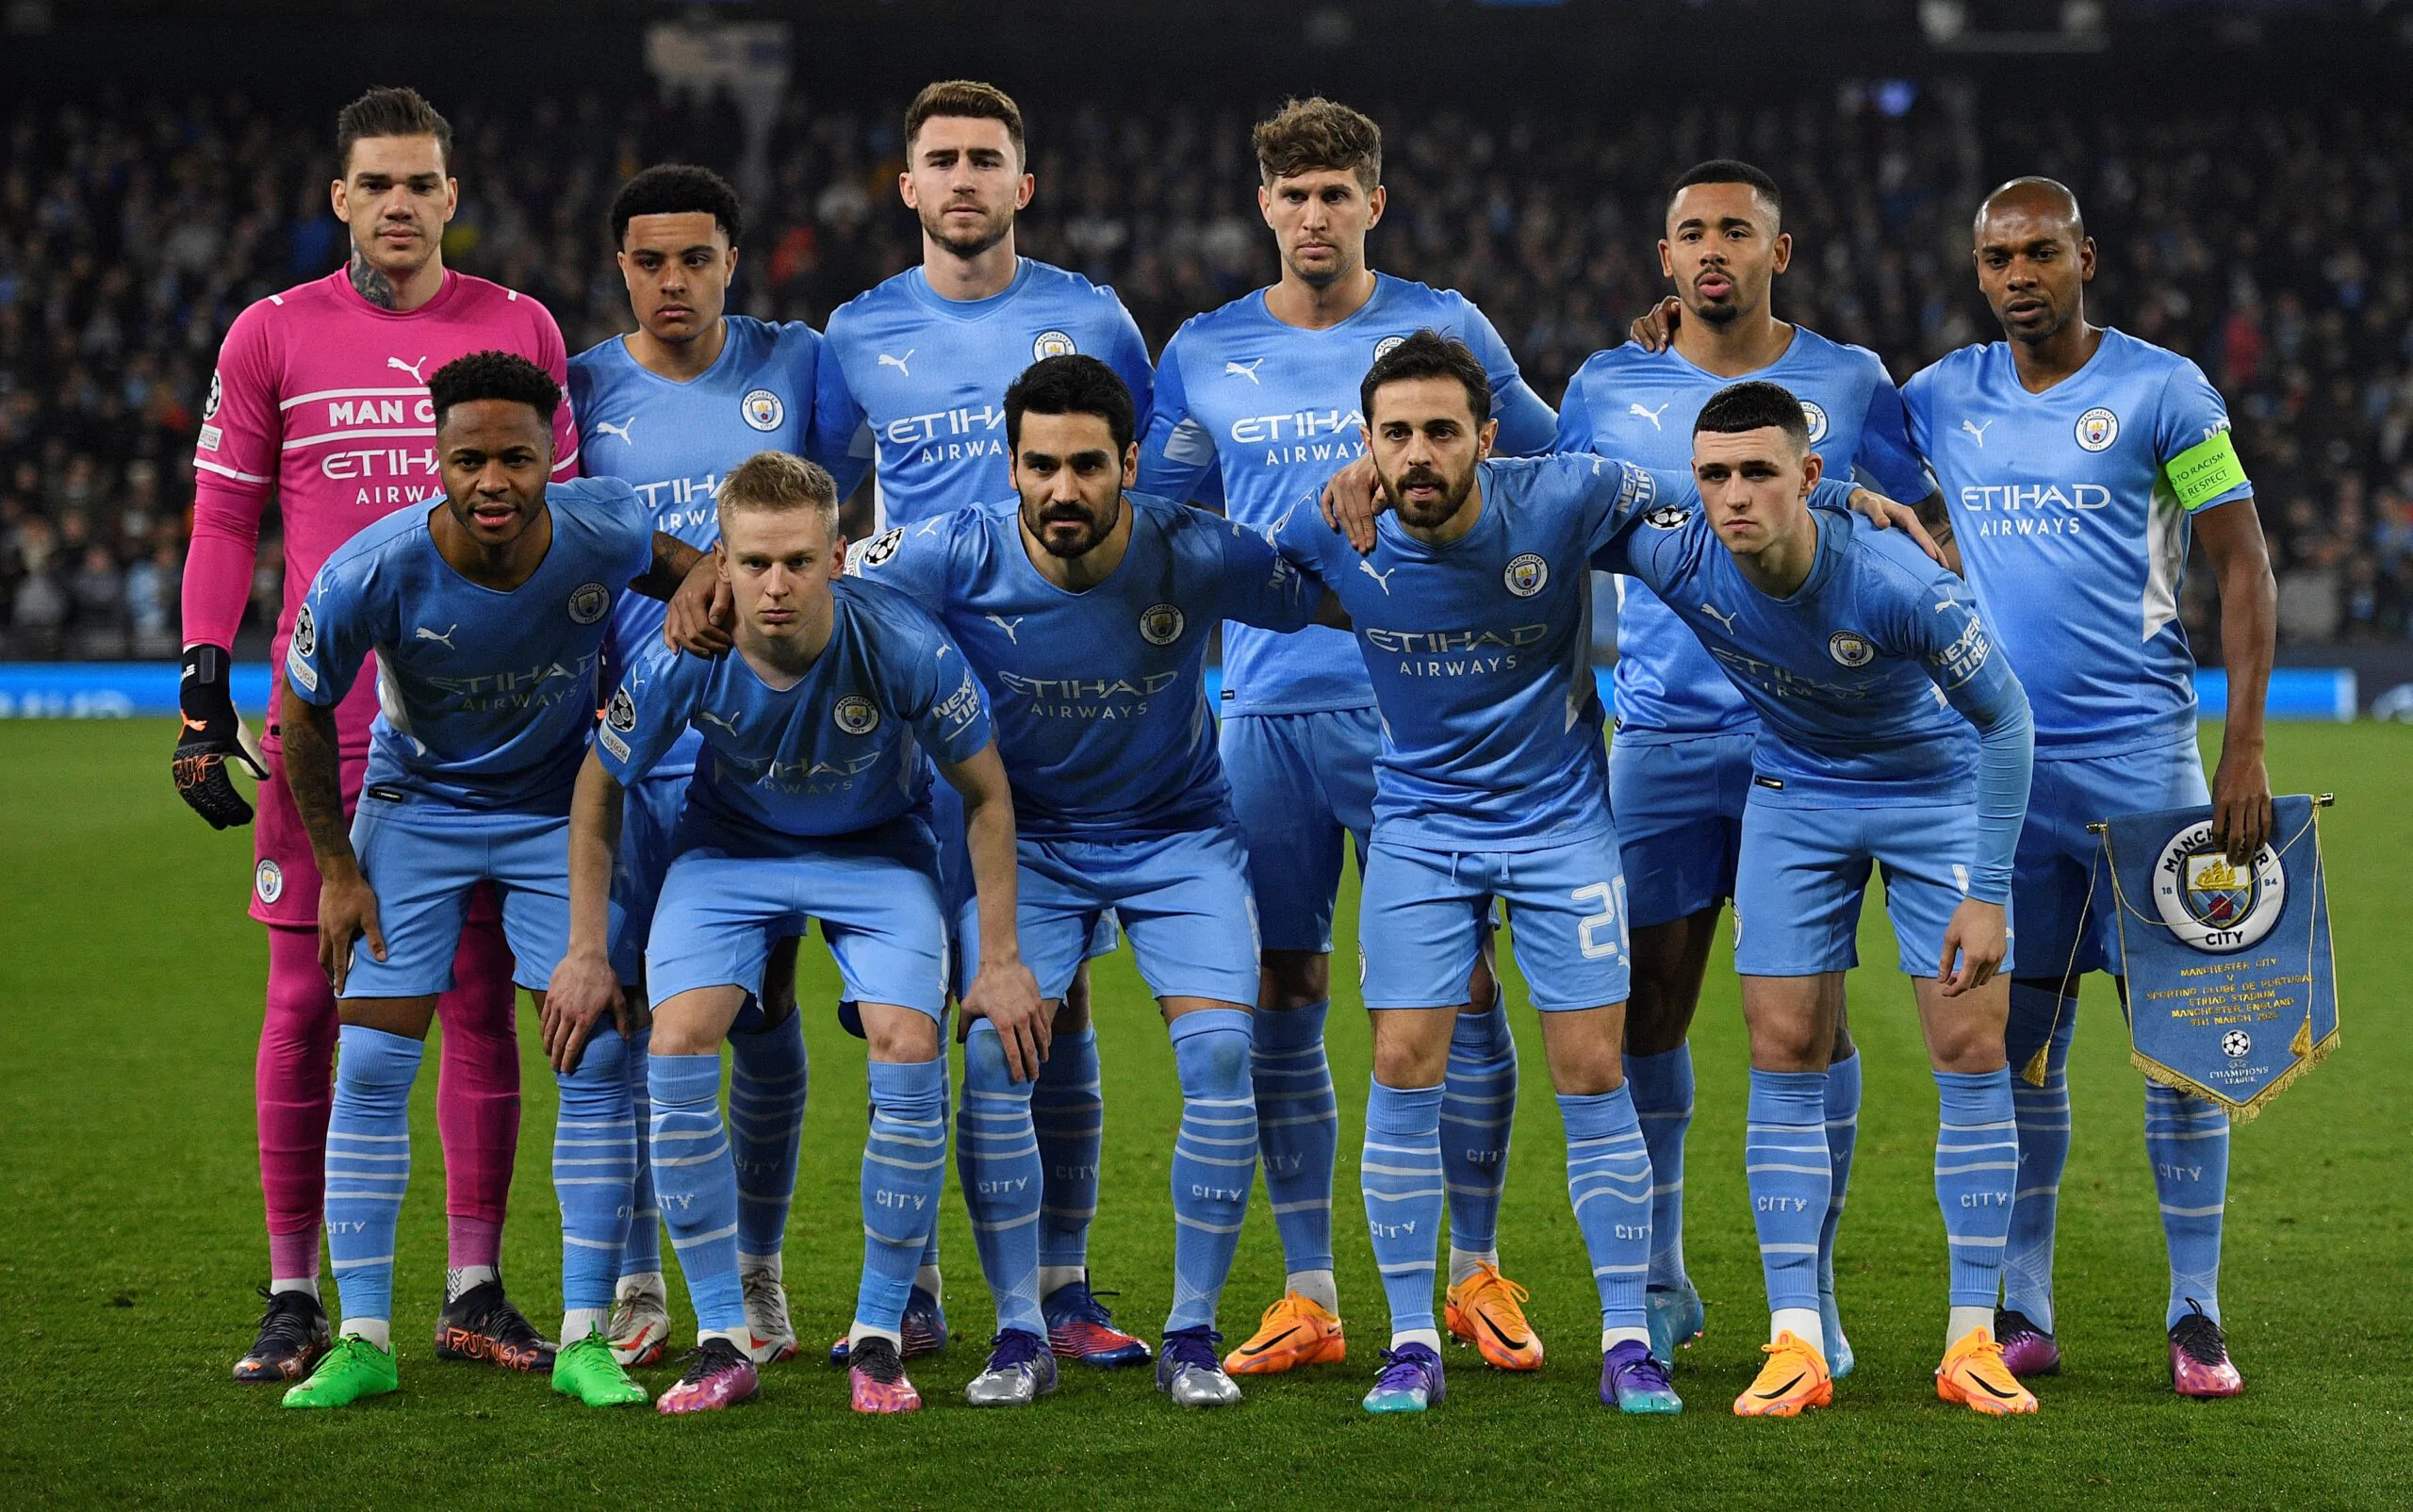 Calciomercato Milan, piace la stella del Manchester City: i dettagli